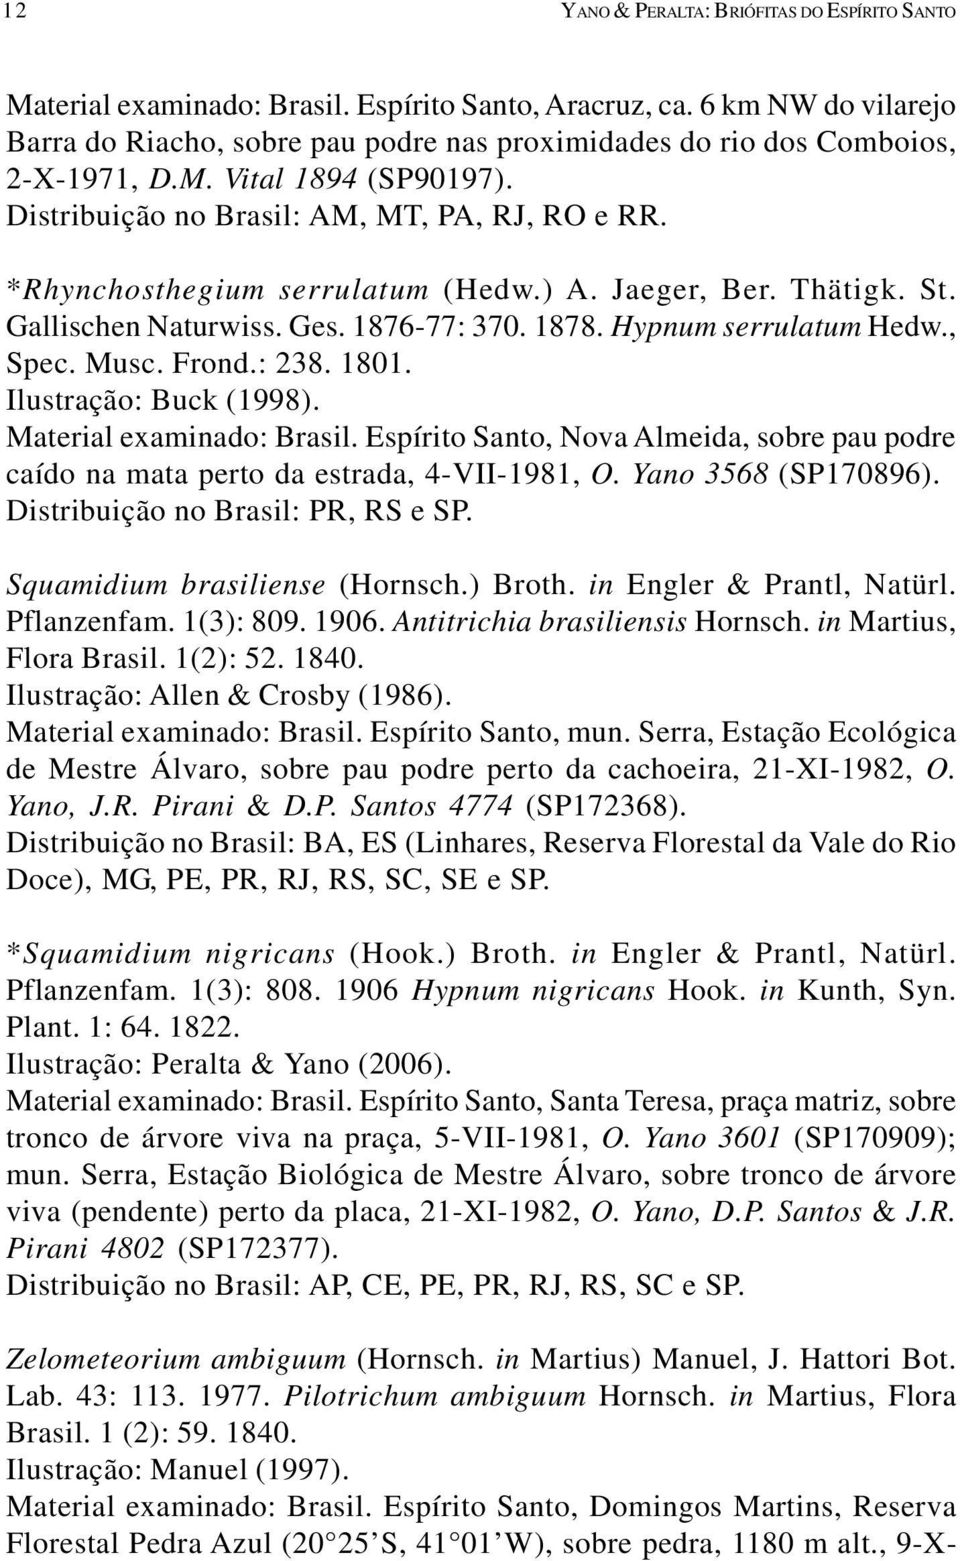 *Rhynchosthegium serrulatum (Hedw.) A. Jaeger, Ber. Thätigk. St. Gallischen Naturwiss. Ges. 1876-77: 370. 1878. Hypnum serrulatum Hedw., Spec. Musc. Frond.: 238. 1801. Ilustração: Buck (1998).